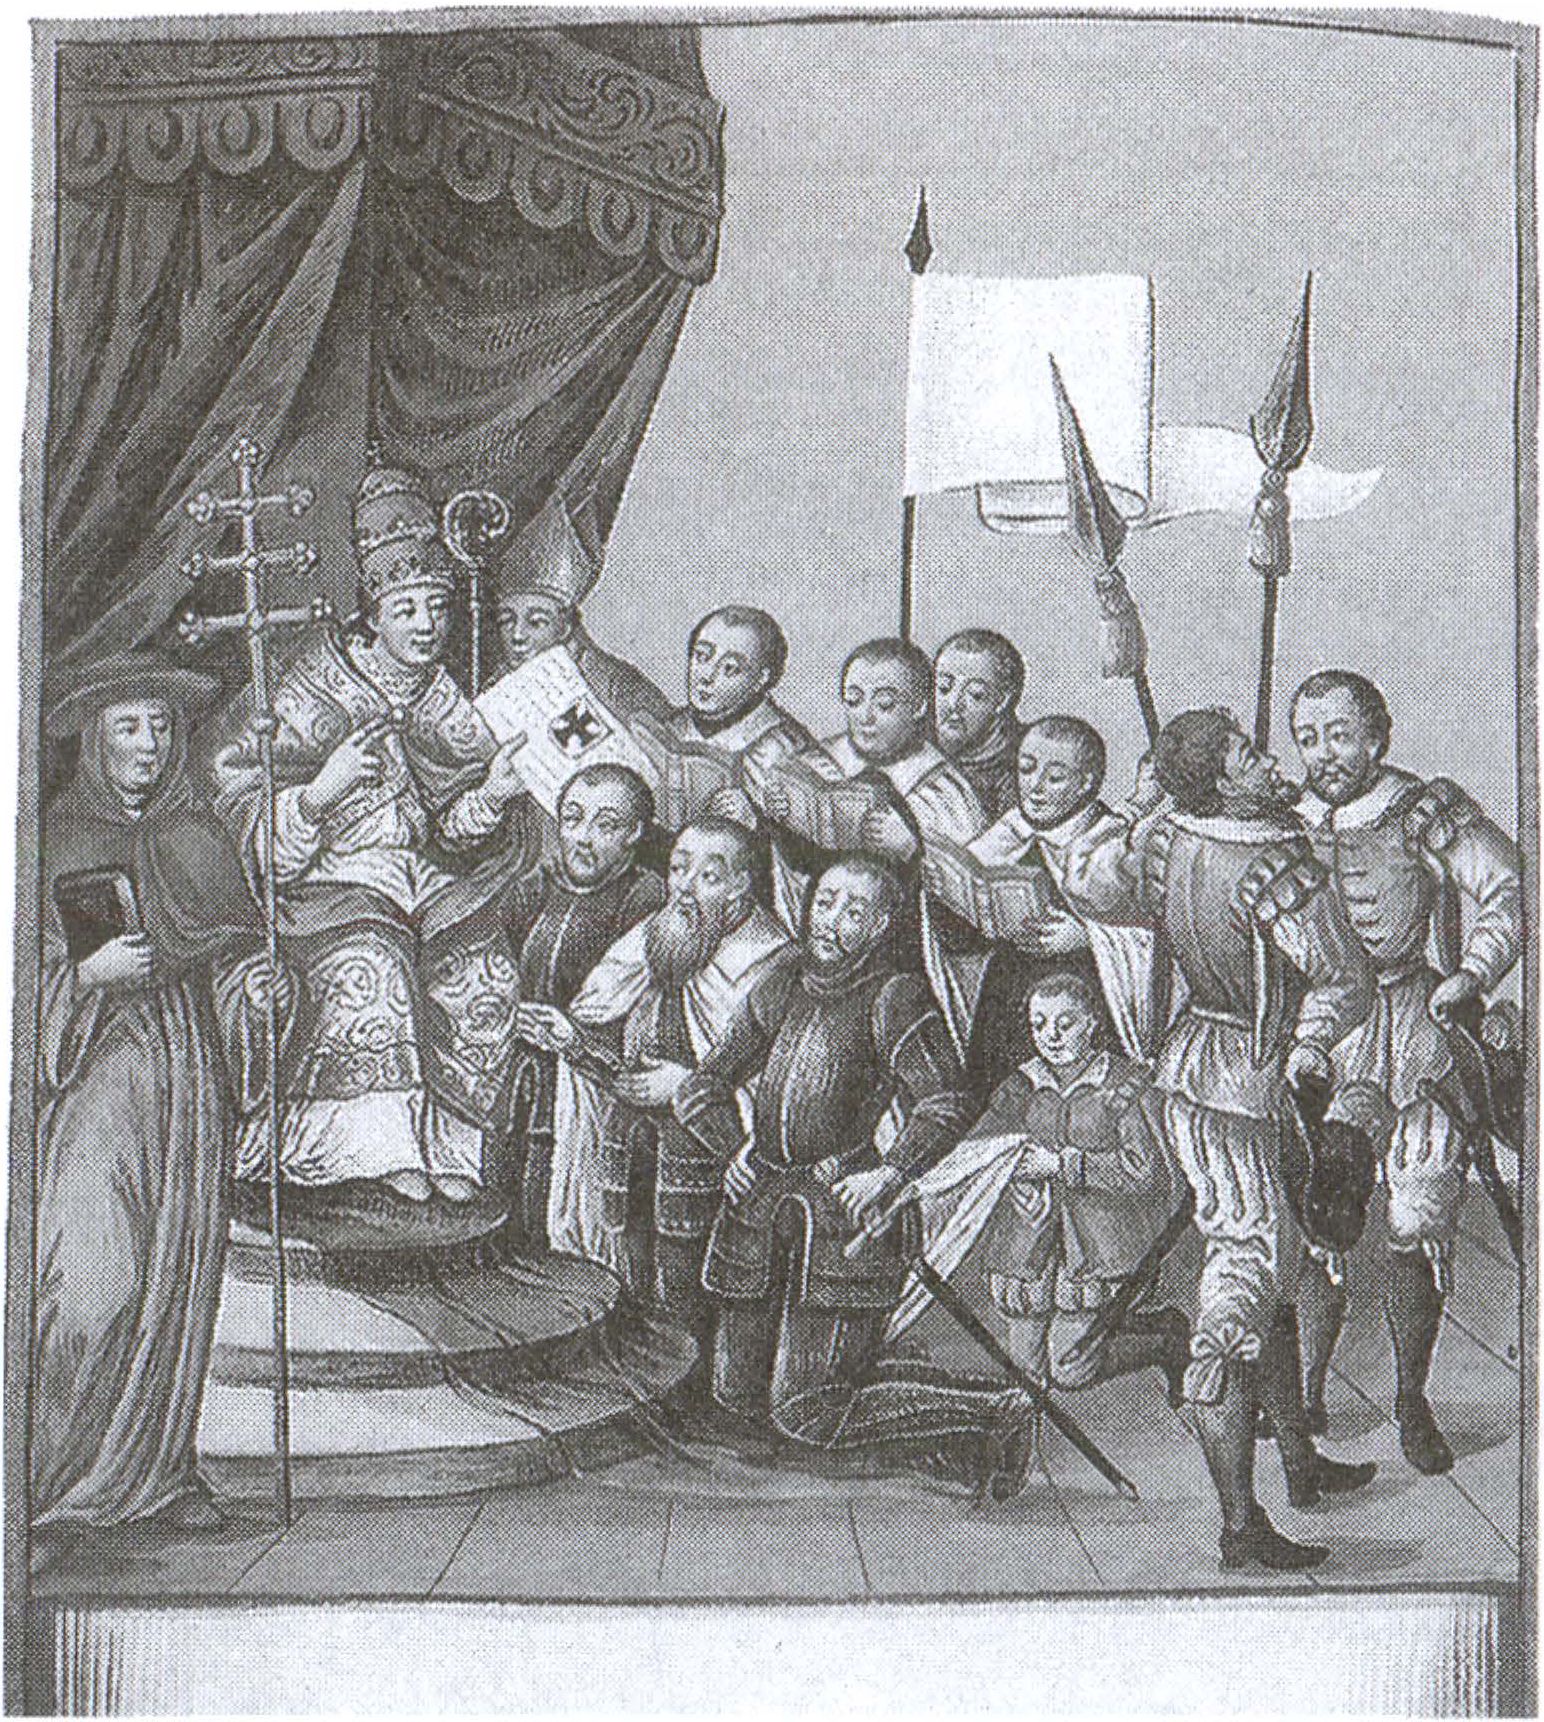 Папа римский дарует Тевтонскому ордену черный крест на первоначально белый стяг ордена